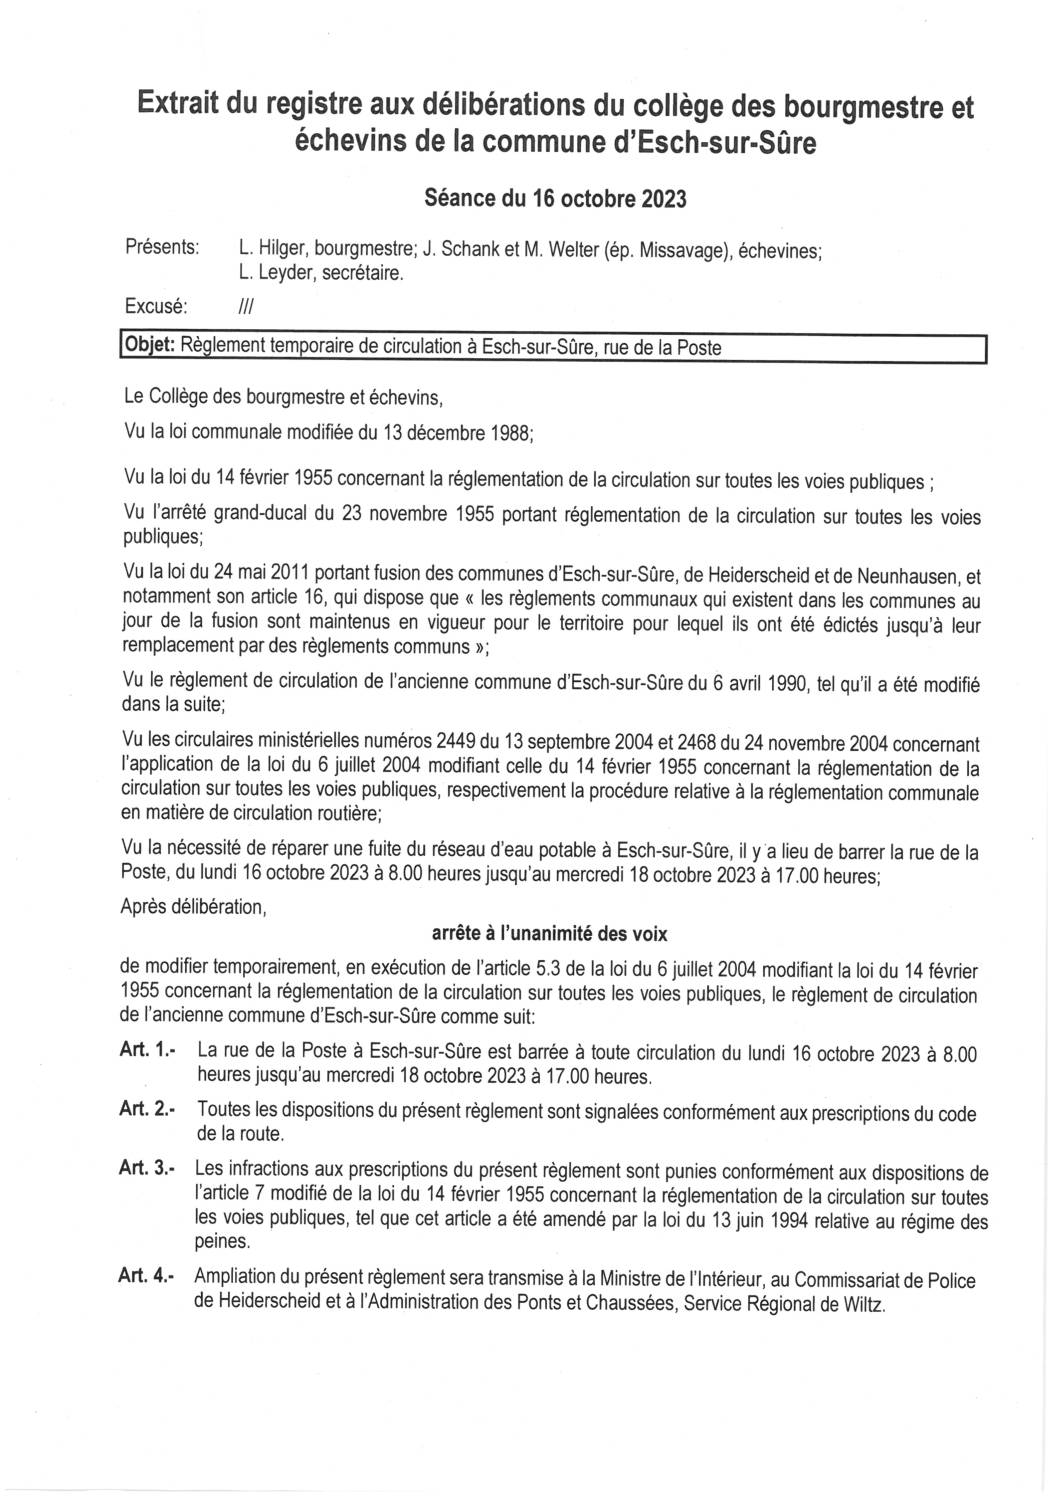 2023.10.18_Règlement temporaire de circulation à Esch-sur-Sûre (rue de la Poste) du 16.10 au 18.10.2023